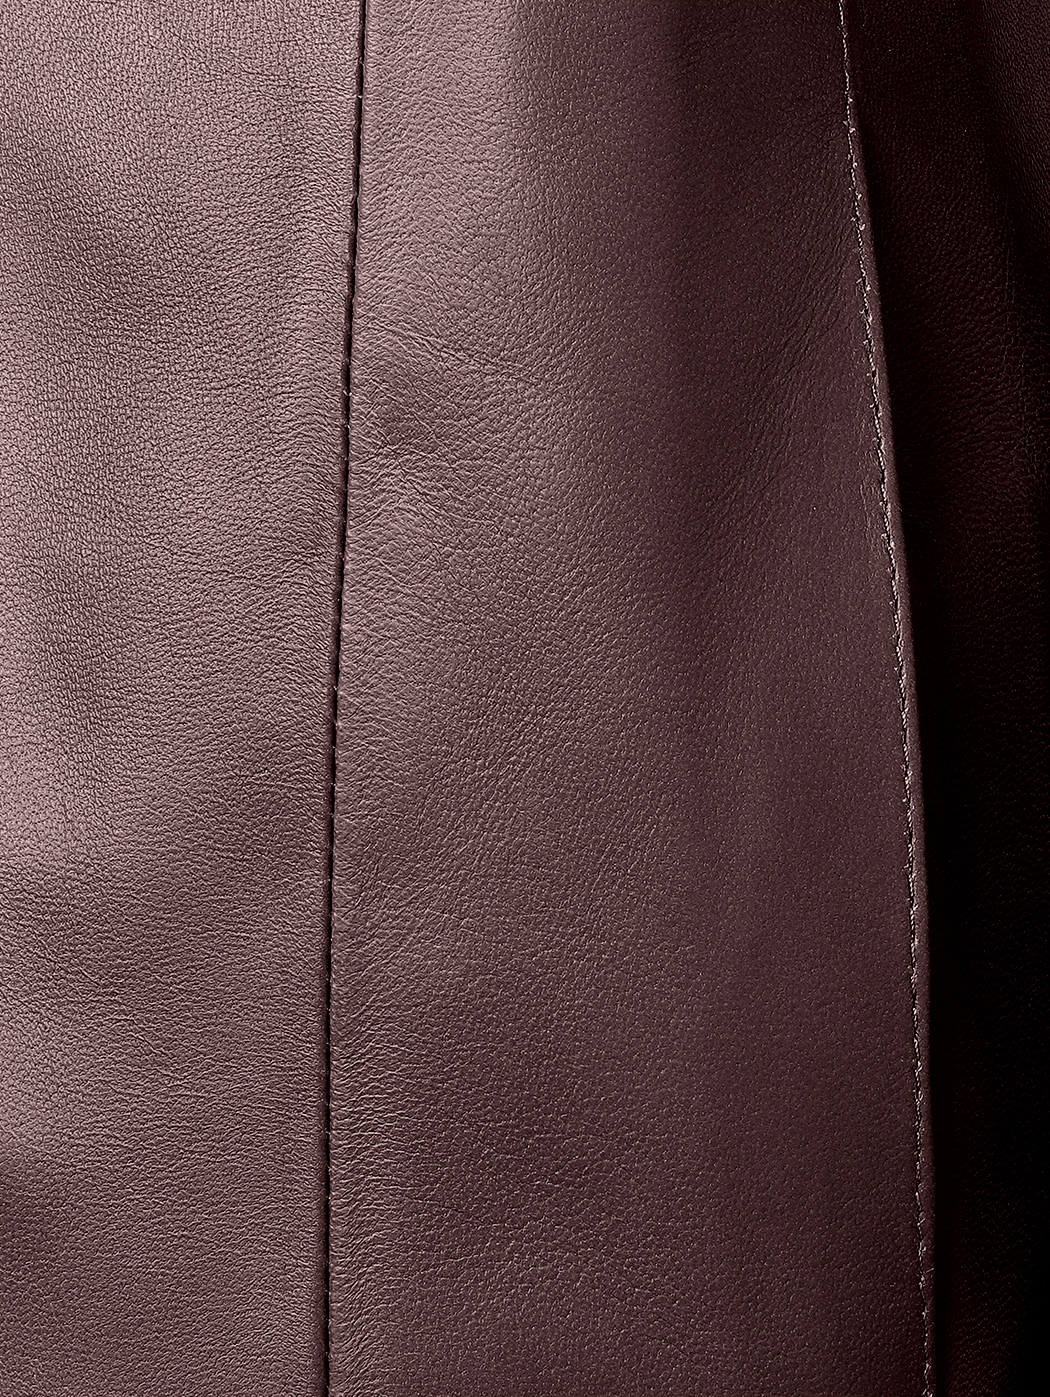 简约立领式短款修身羊皮夹克 深棕色